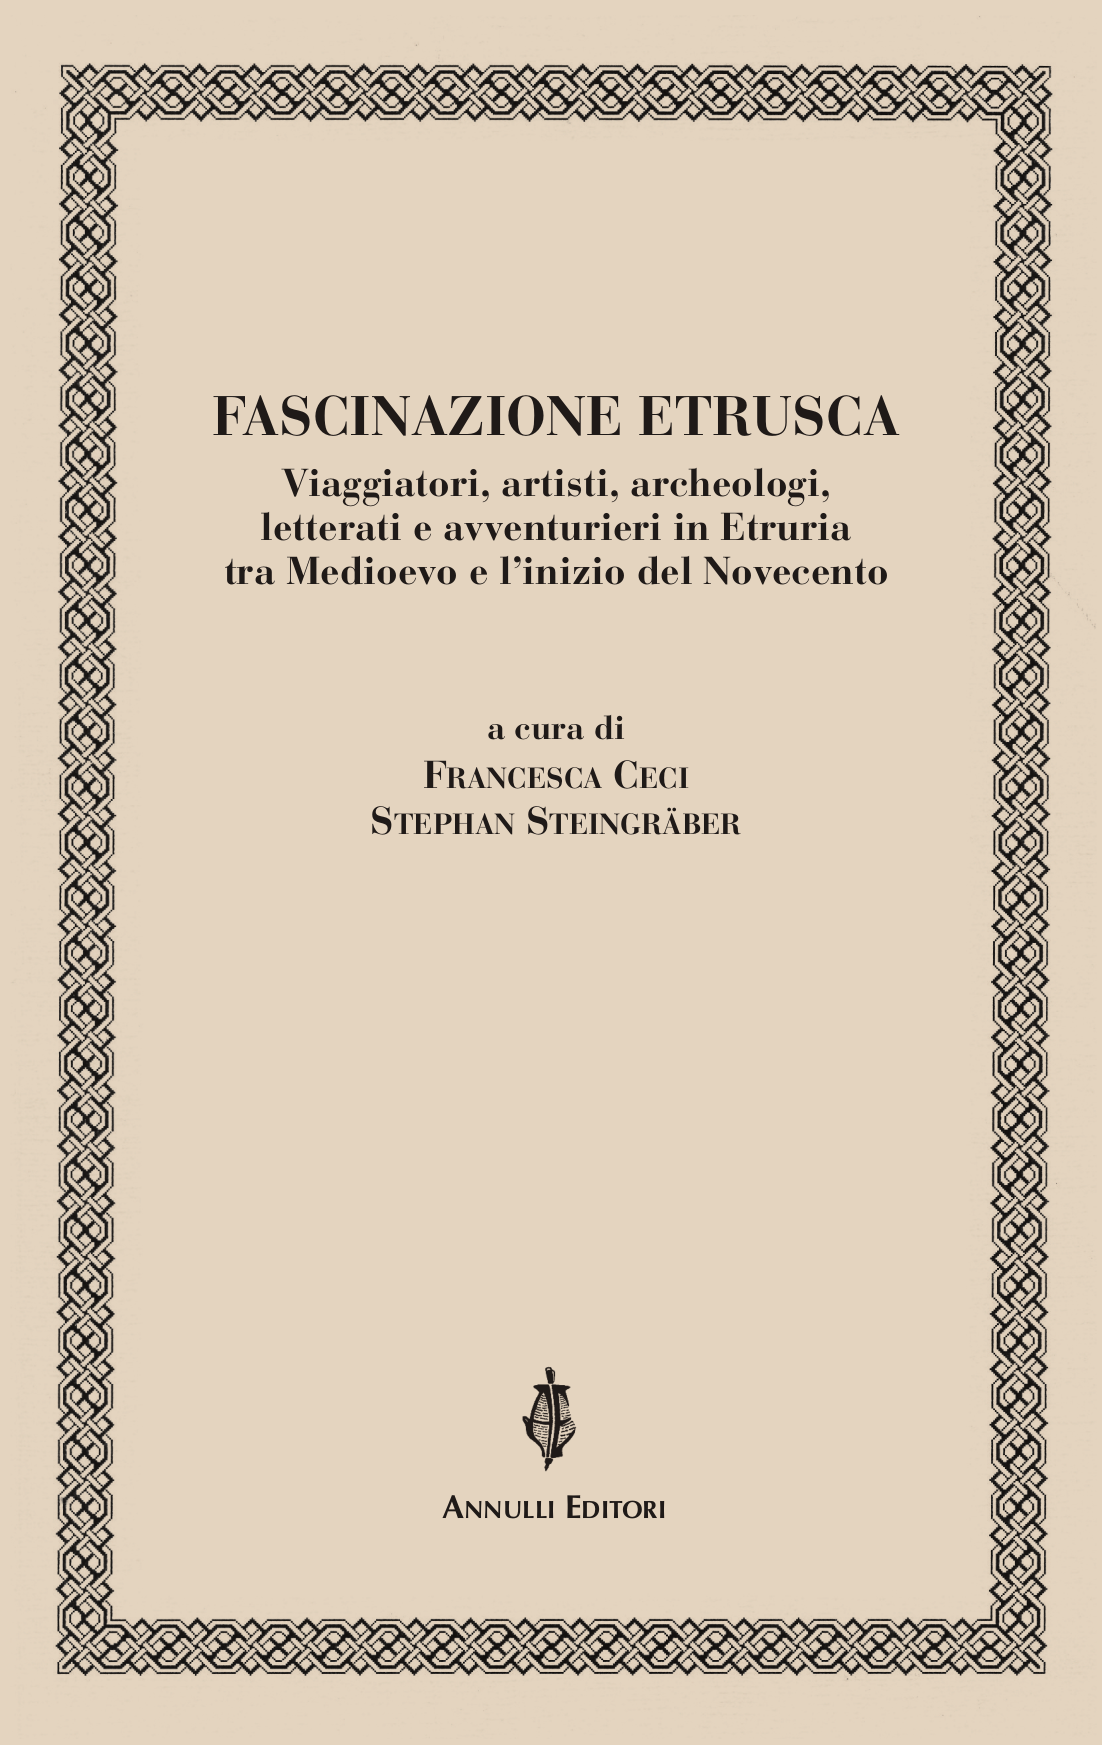 Copertina_Fascinazione-etrusca